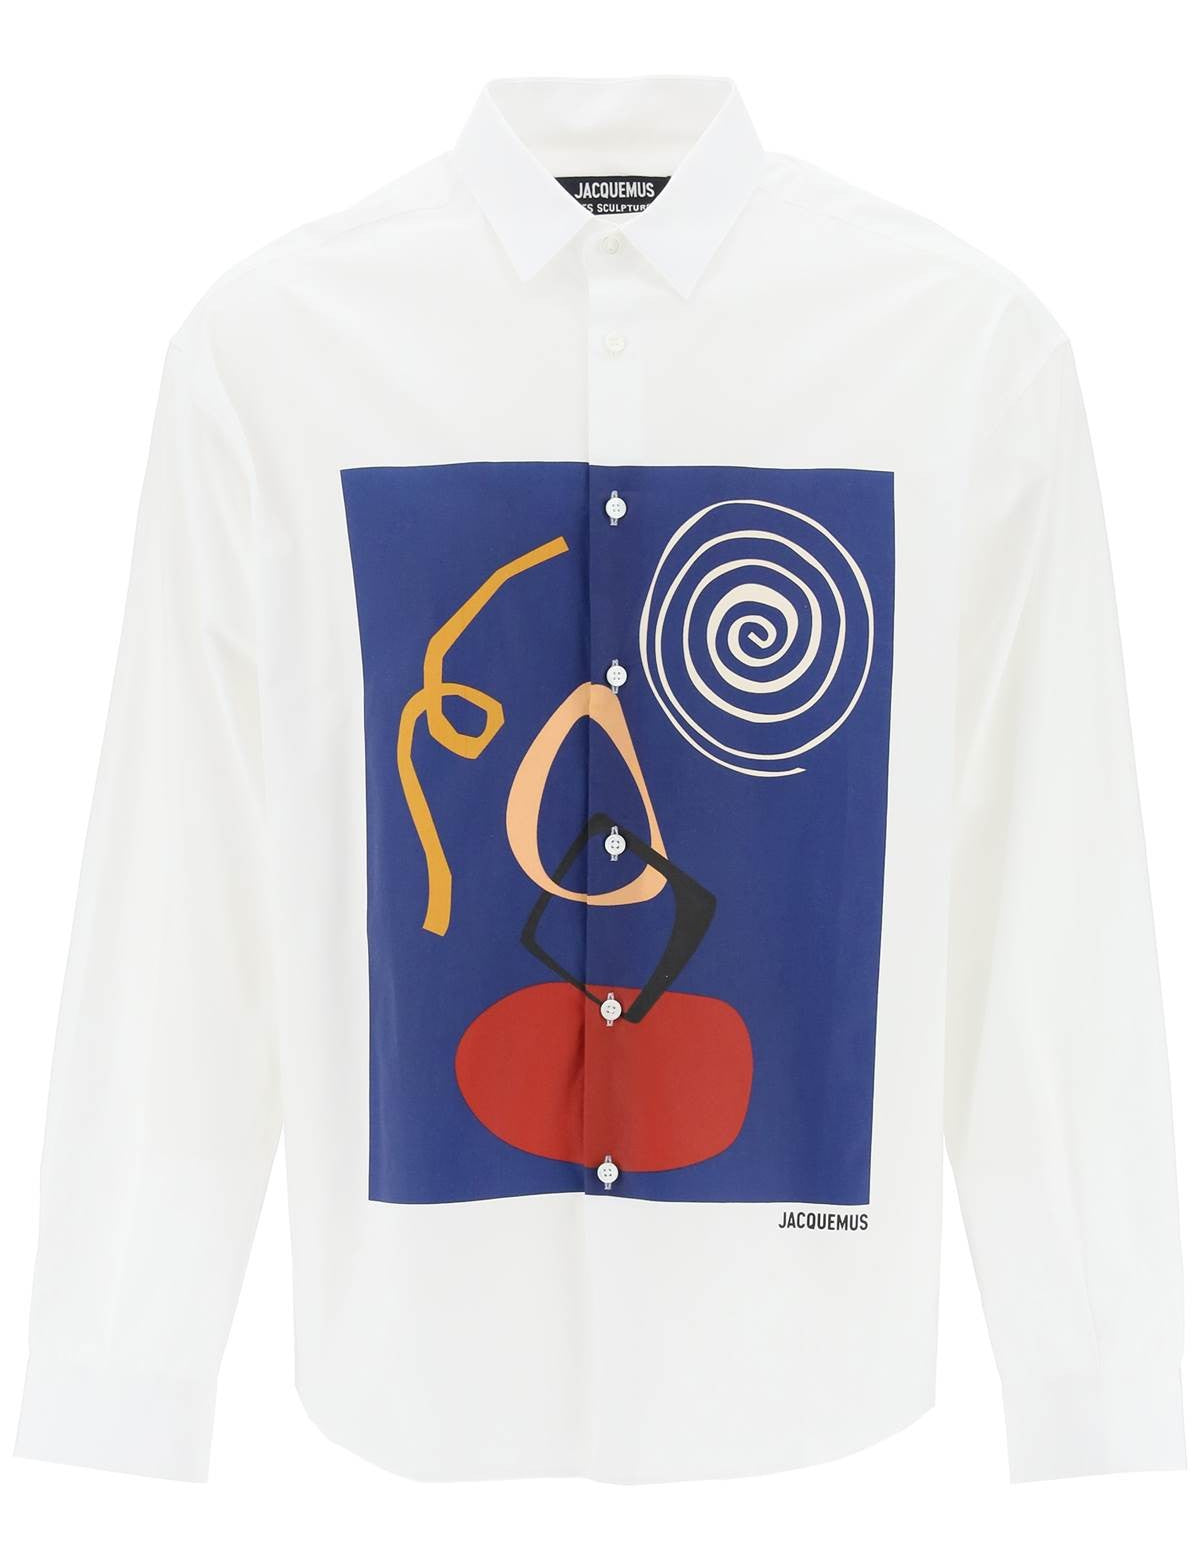 jacquemus-etta-simonetta-shirt.jpg